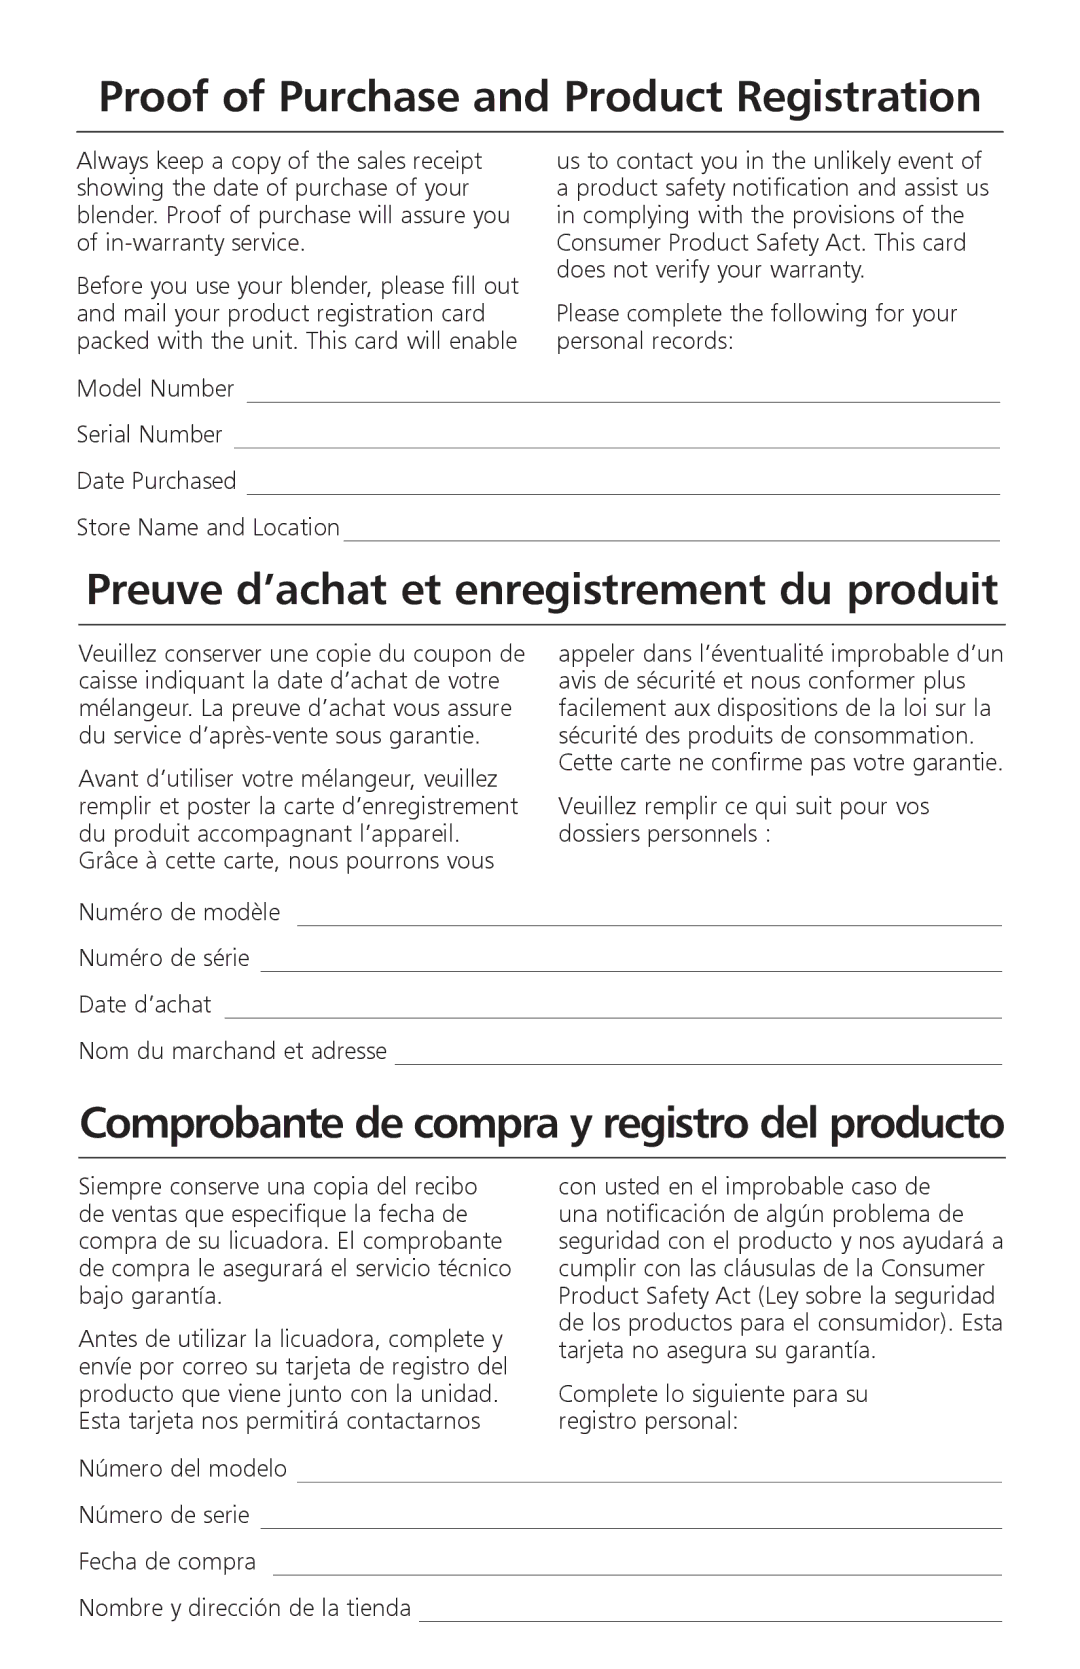 KitchenAid KSB465 manual Proof of Purchase and Product Registration, Preuve d’achat et enregistrement du produit 